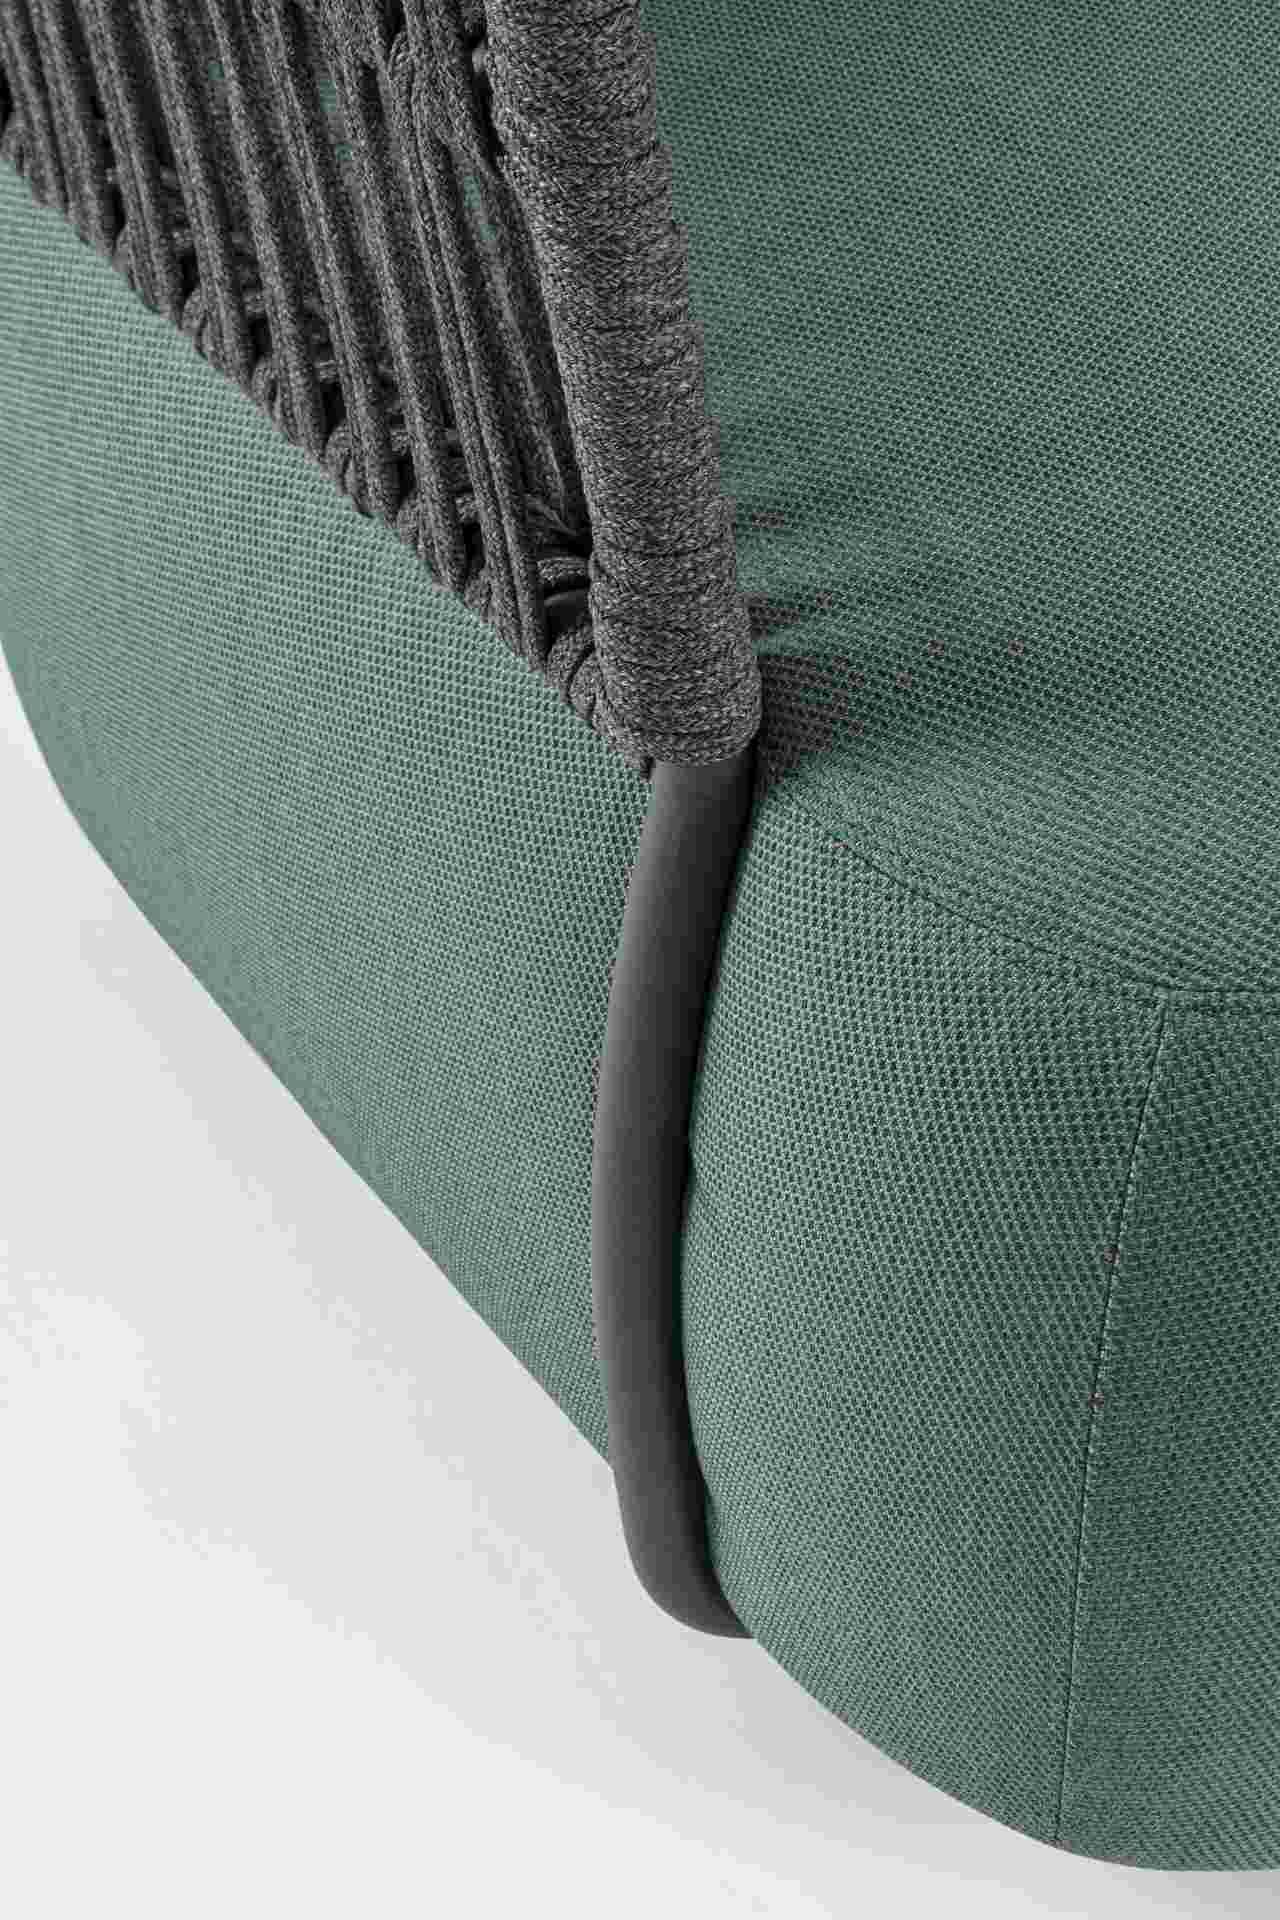 Der Gartensessel Palmer überzeugt mit seinem modernen Design. Gefertigt wurde er aus Olefin-Stoff, welcher einen grüne Farbton besitzt. Das Gestell ist aus Aluminium und hat eine Anthrazit Farbe. Der Sessel verfügt über eine Sitzhöhe von 40 cm und ist für